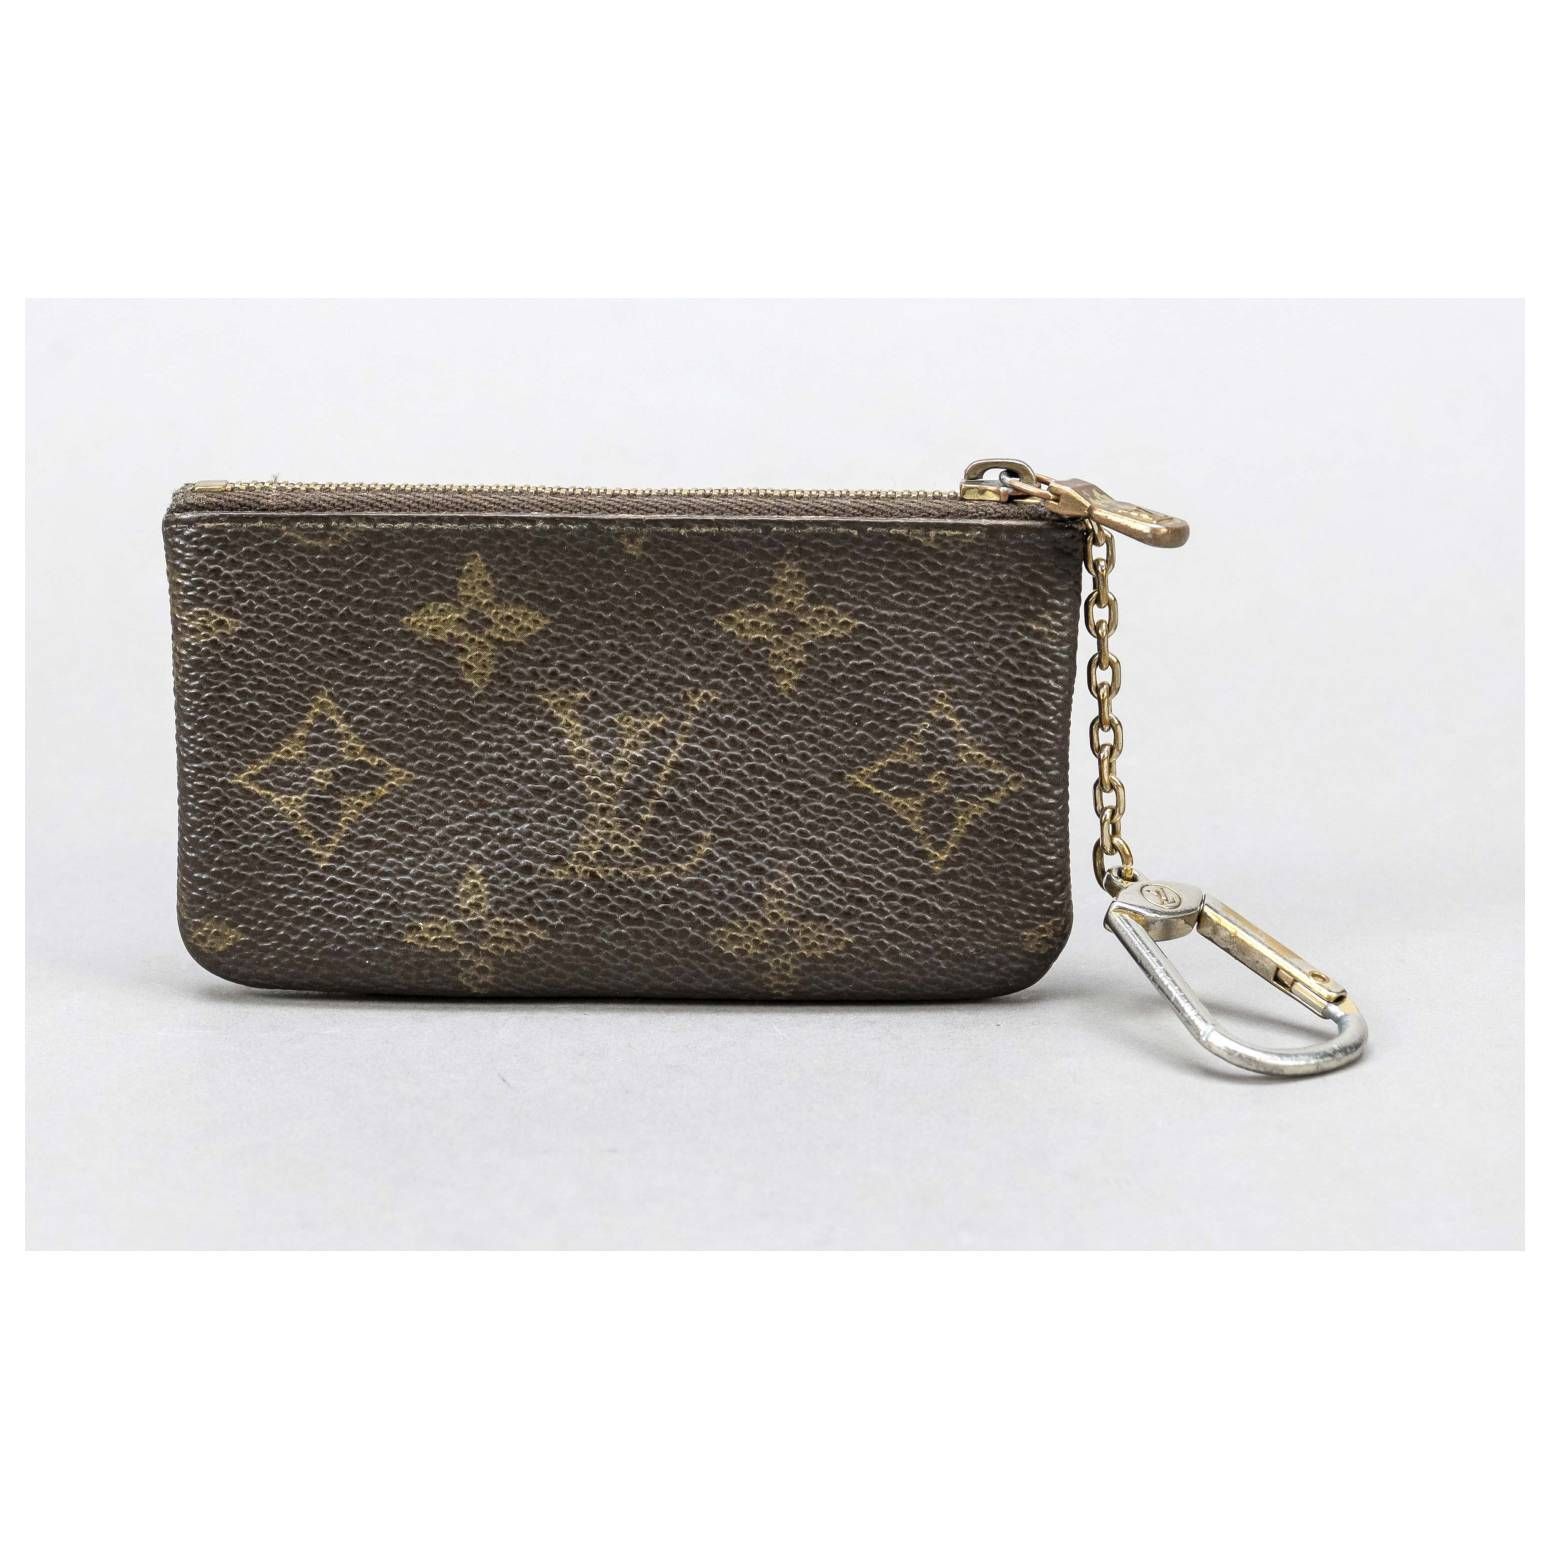 Louis Vuitton, Bags, Louis Vuitton De Key Pouch